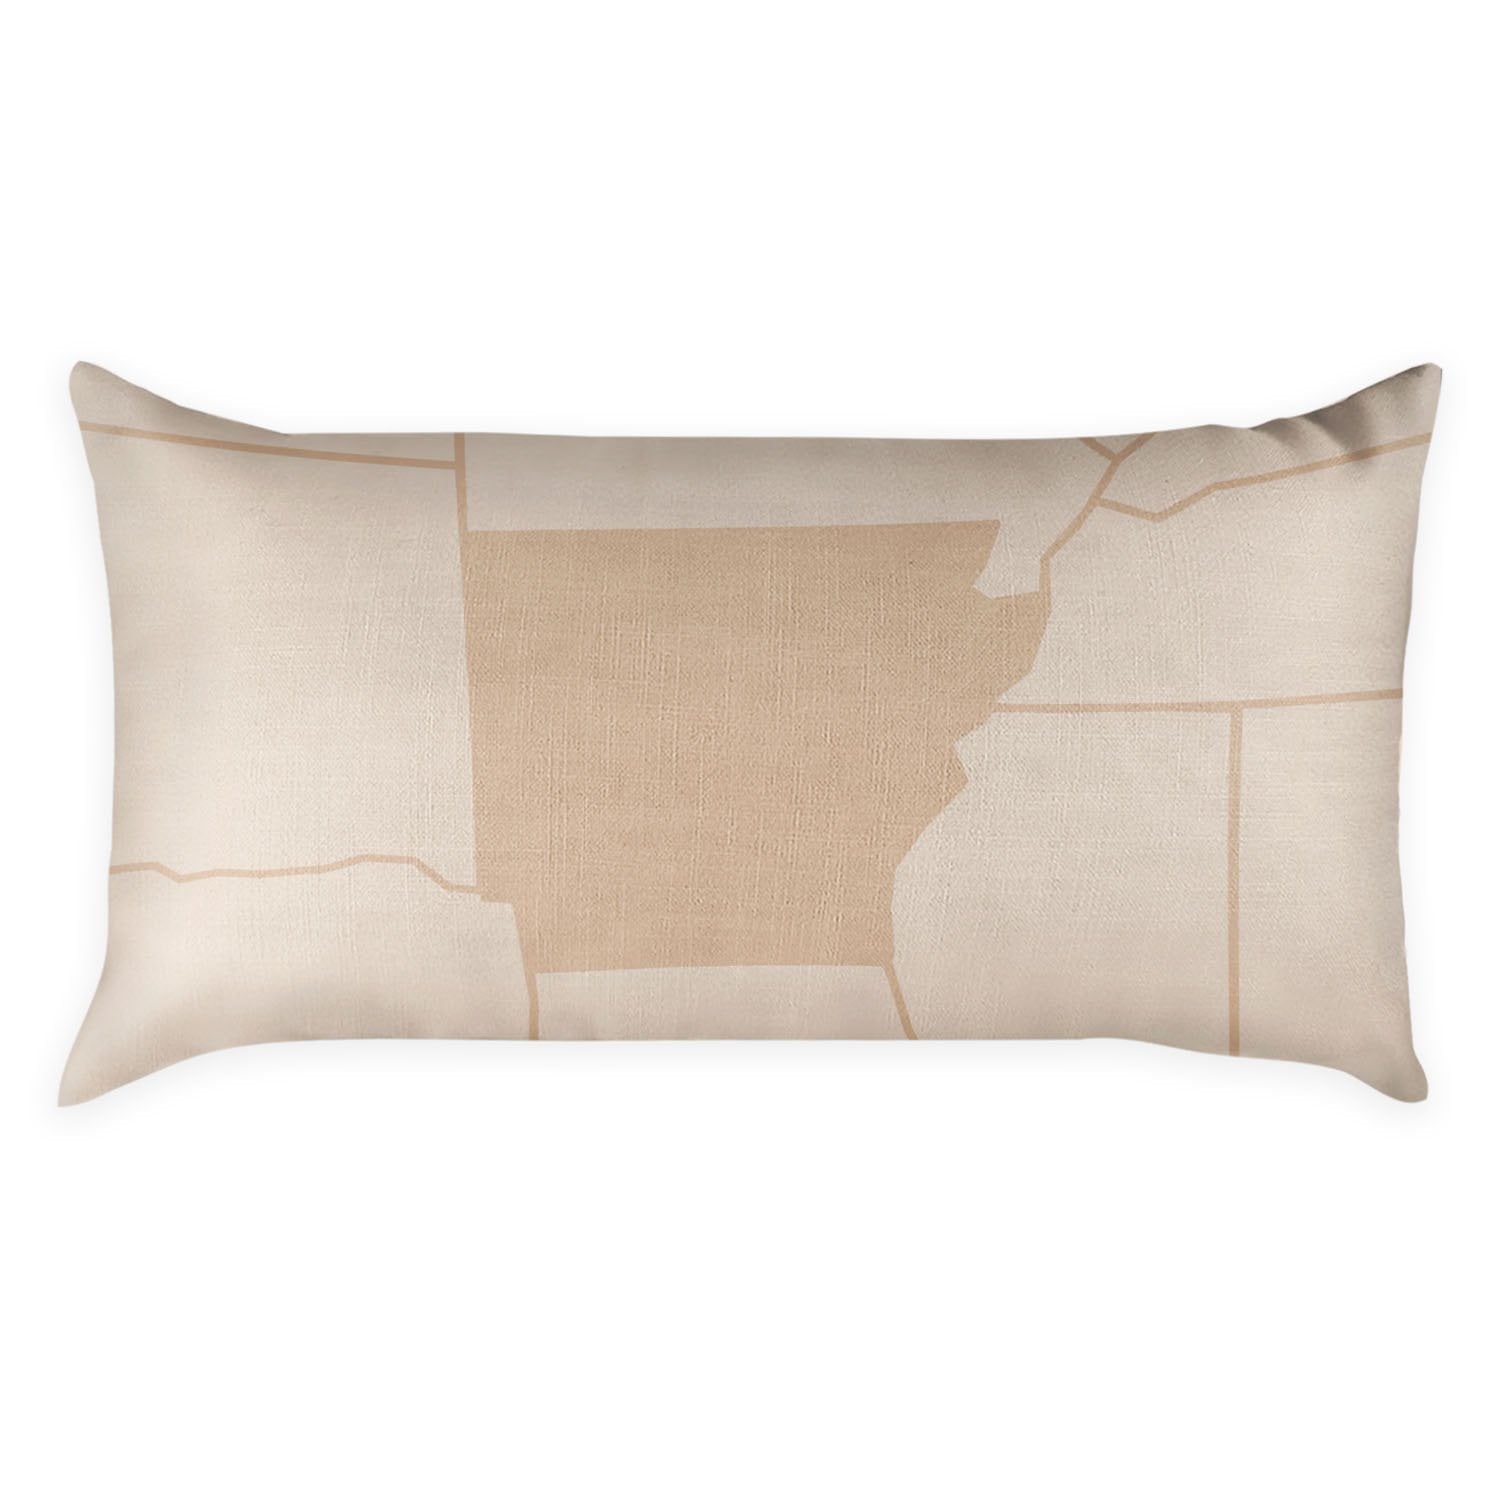 Arkansas Lumbar Pillow - Linen -  - Knotty Tie Co.